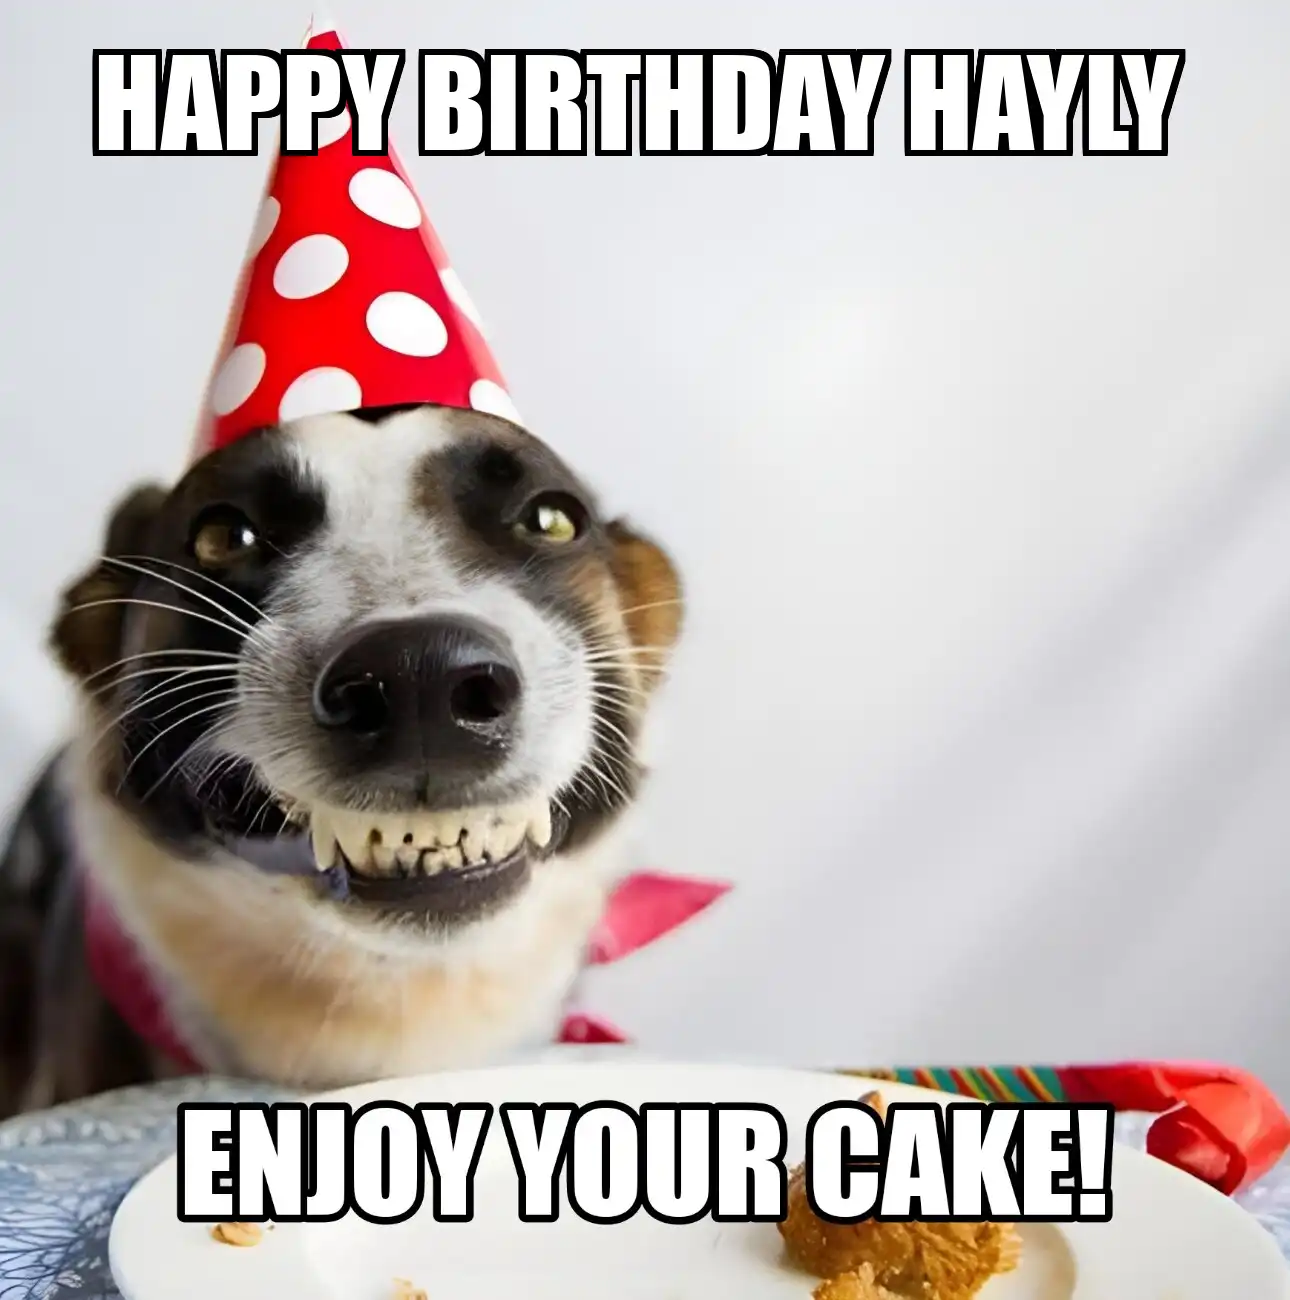 Happy Birthday Hayly Enjoy Your Cake Dog Meme